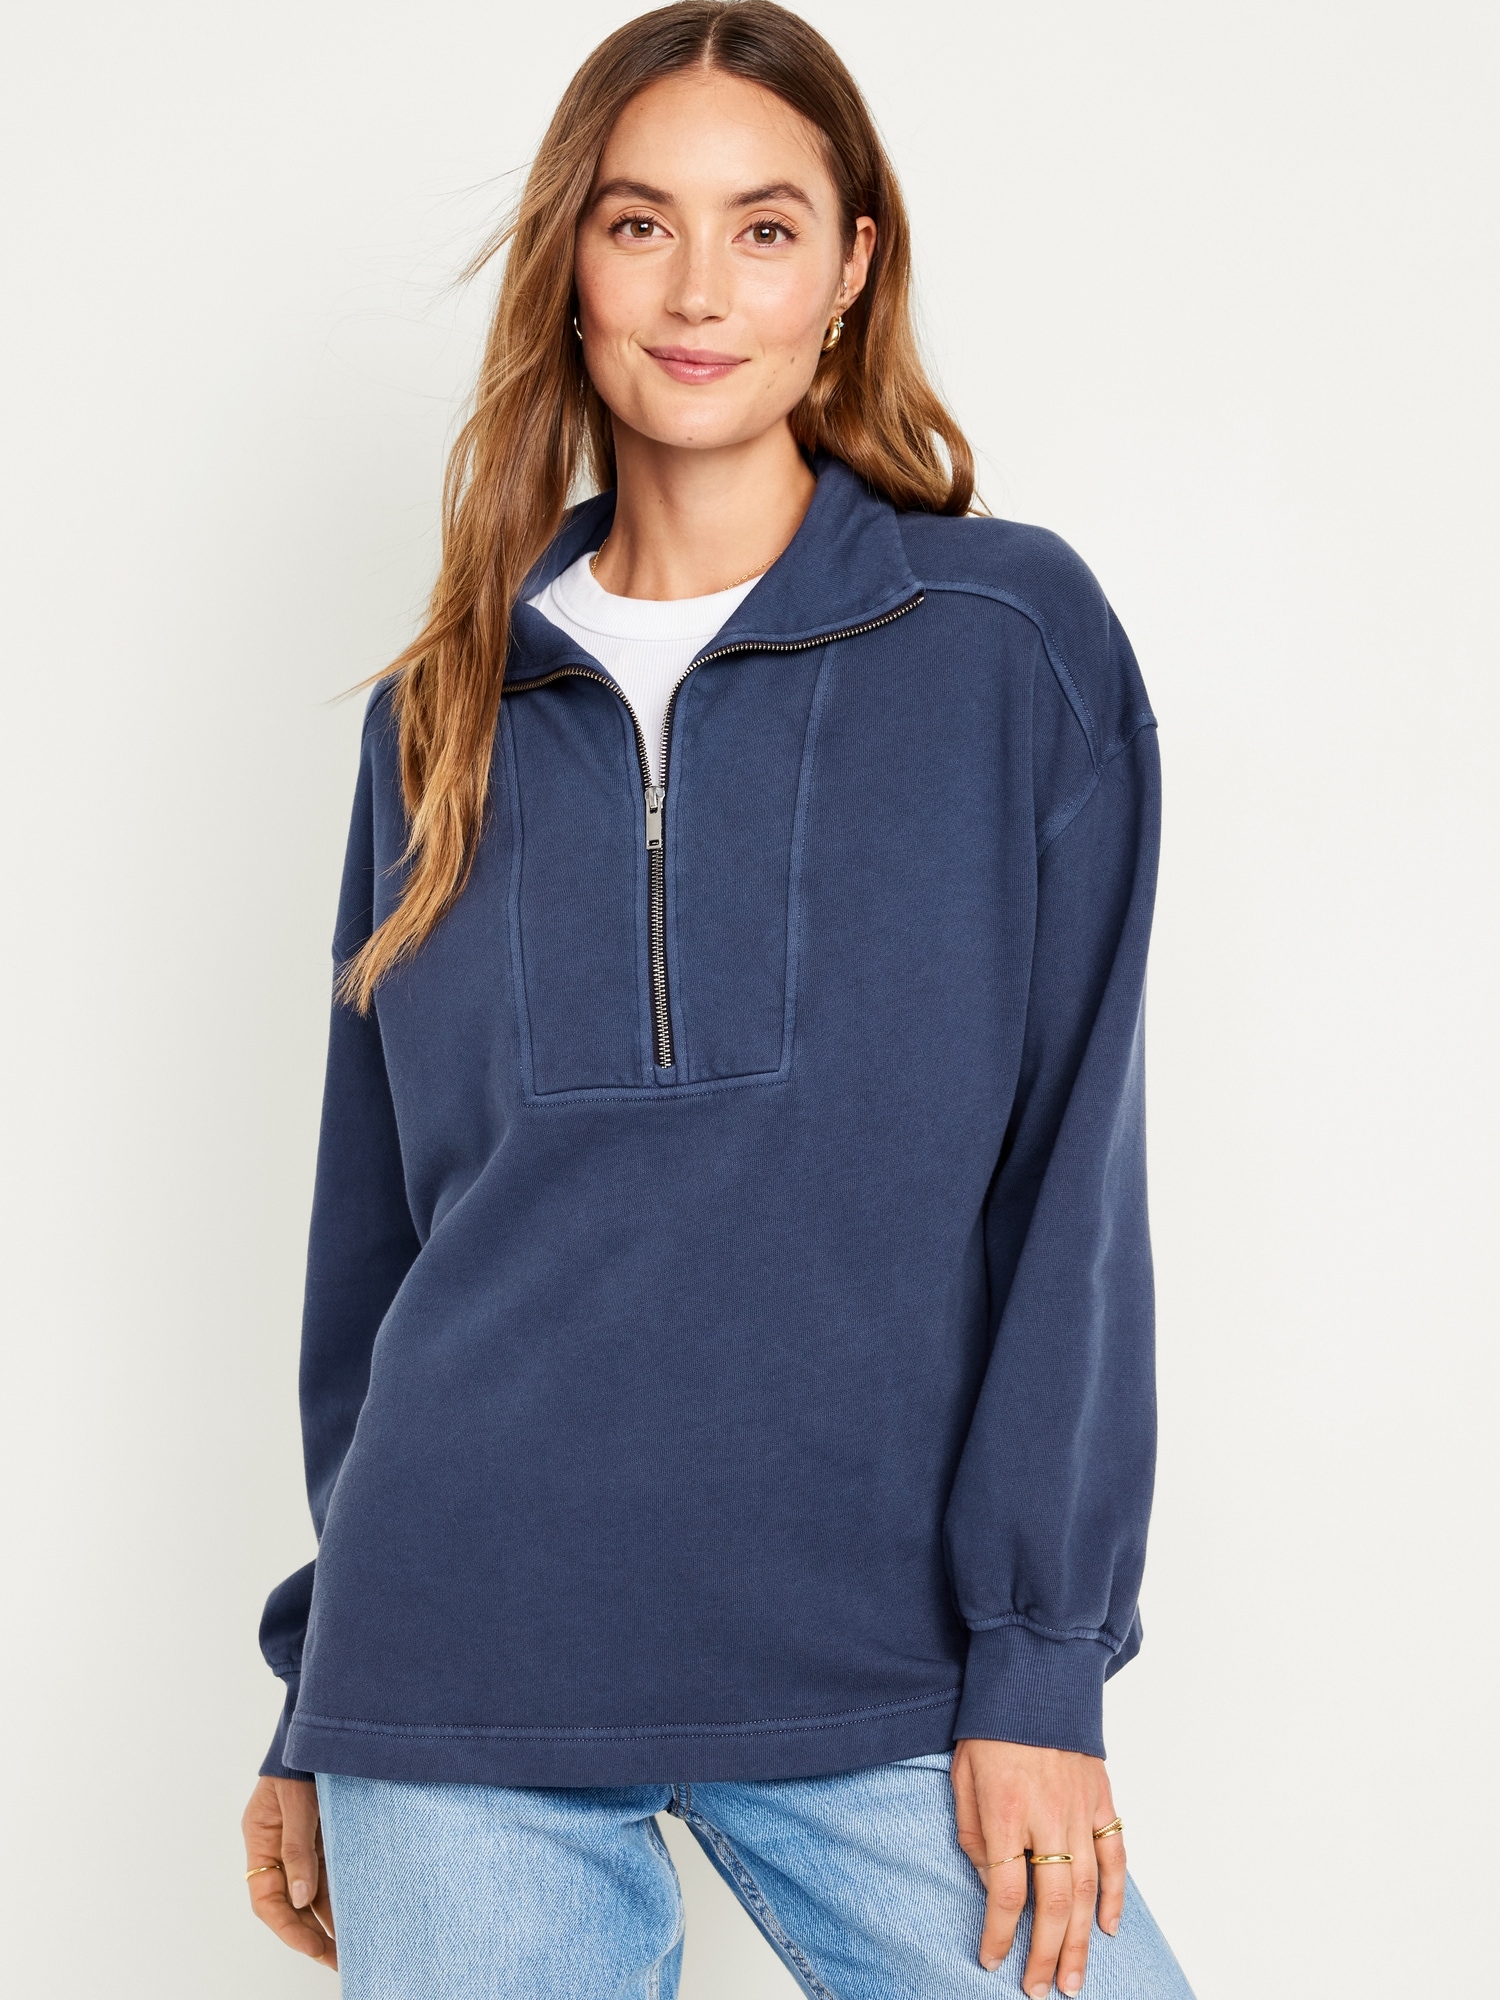 KGMTL Oversized Half-Zip Sweatshirt